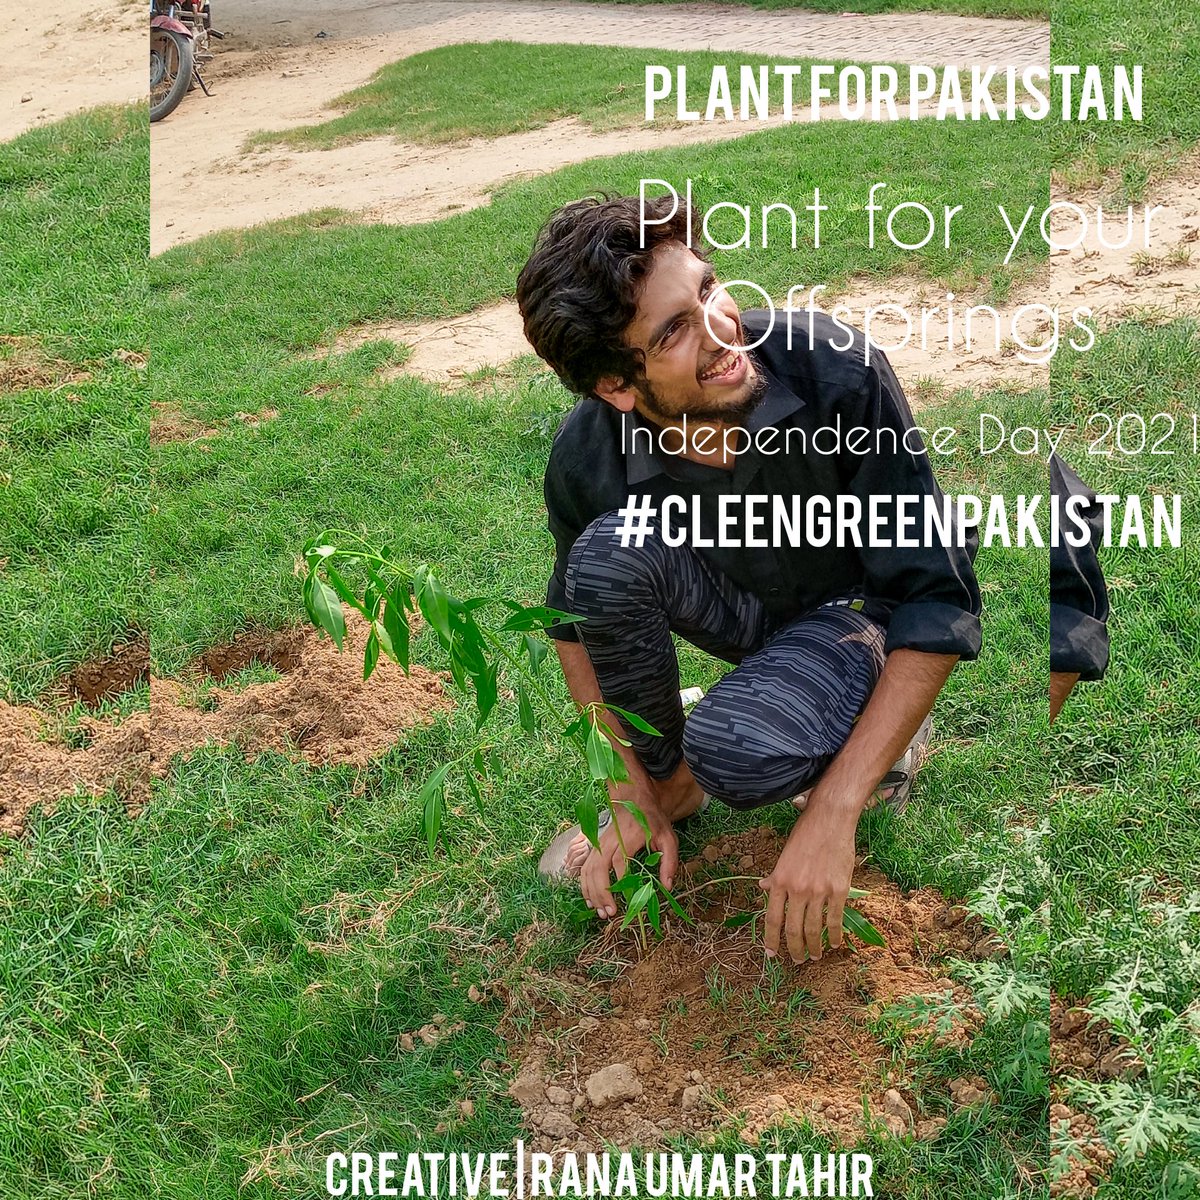 یقین جانئے پودا سستا ہے اور باجا مہنگا ہے

لہذا 'پاااااں' کی بجائے
'چھاں' کیجئے۔
🌳🌳🌳
14 اگست کو پودا لگائیں
@ISFPakistan
And @IYWPakistan_ did plantation drive. 
@Fatii_PTI
@Head_groups @syedzadi22
@CleanGreenPK
#CleanGreenPakistan 🌳🌴 
#plantforpakistan 
#Plant4Pakistan21